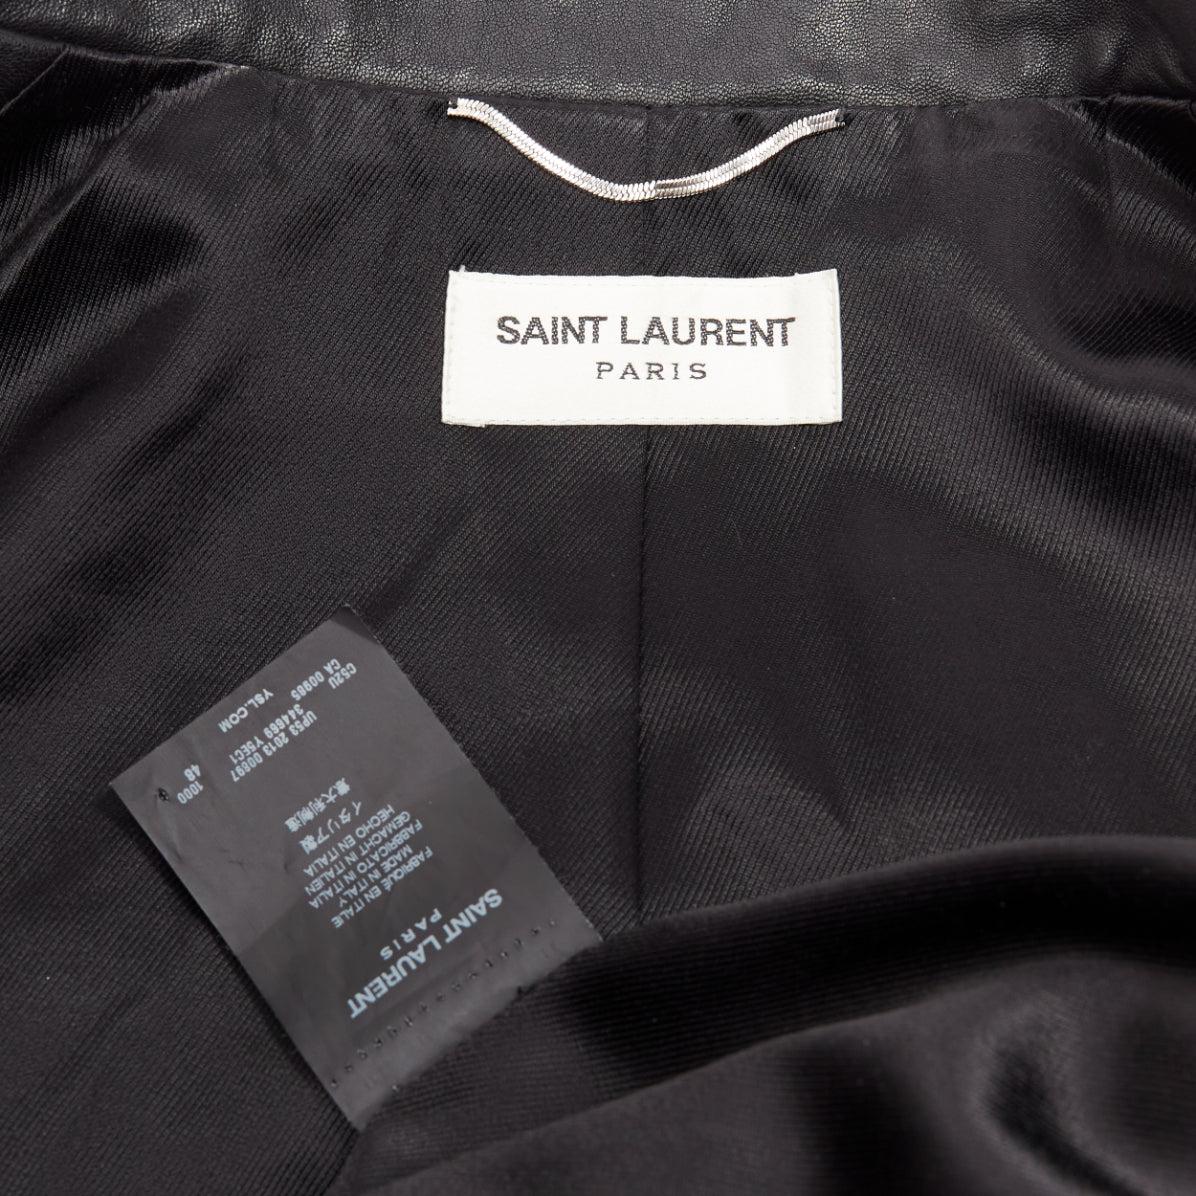 SAINT LAURENT Hedi Slimane 2013 black lambskin leather studded biker FR48 M For Sale 6